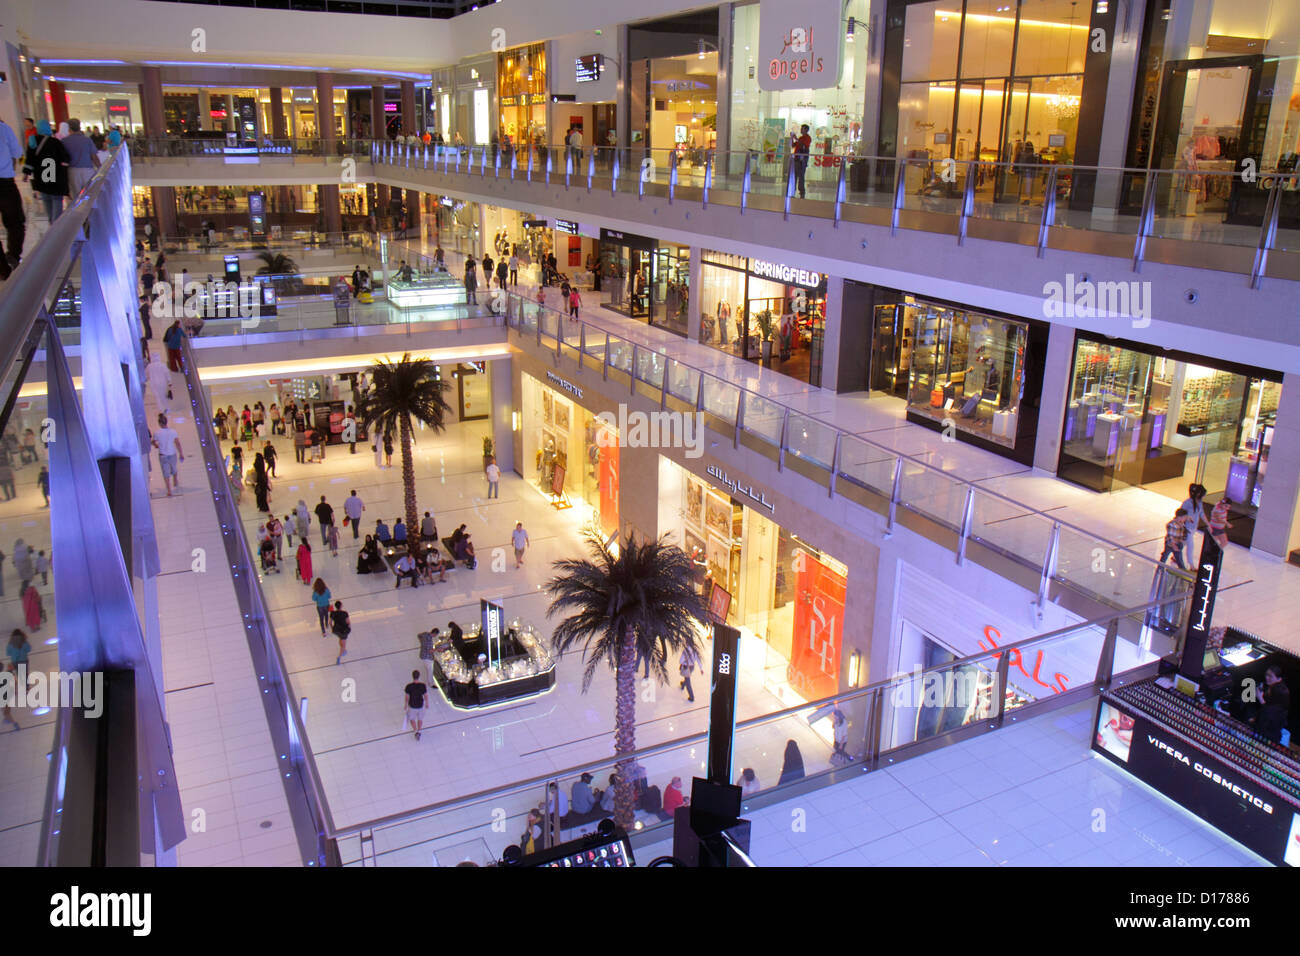 Dubai VAE, Vereinigte Arabische Emirate, Innenstadt von Dubai, Burj Dubai, Dubai Mall, Geschäft, Geschäfte, Unternehmen, Bezirk, Ebenen, Engel, Englisch, Arabisch, Sprache, zweisprachig, f Stockfoto